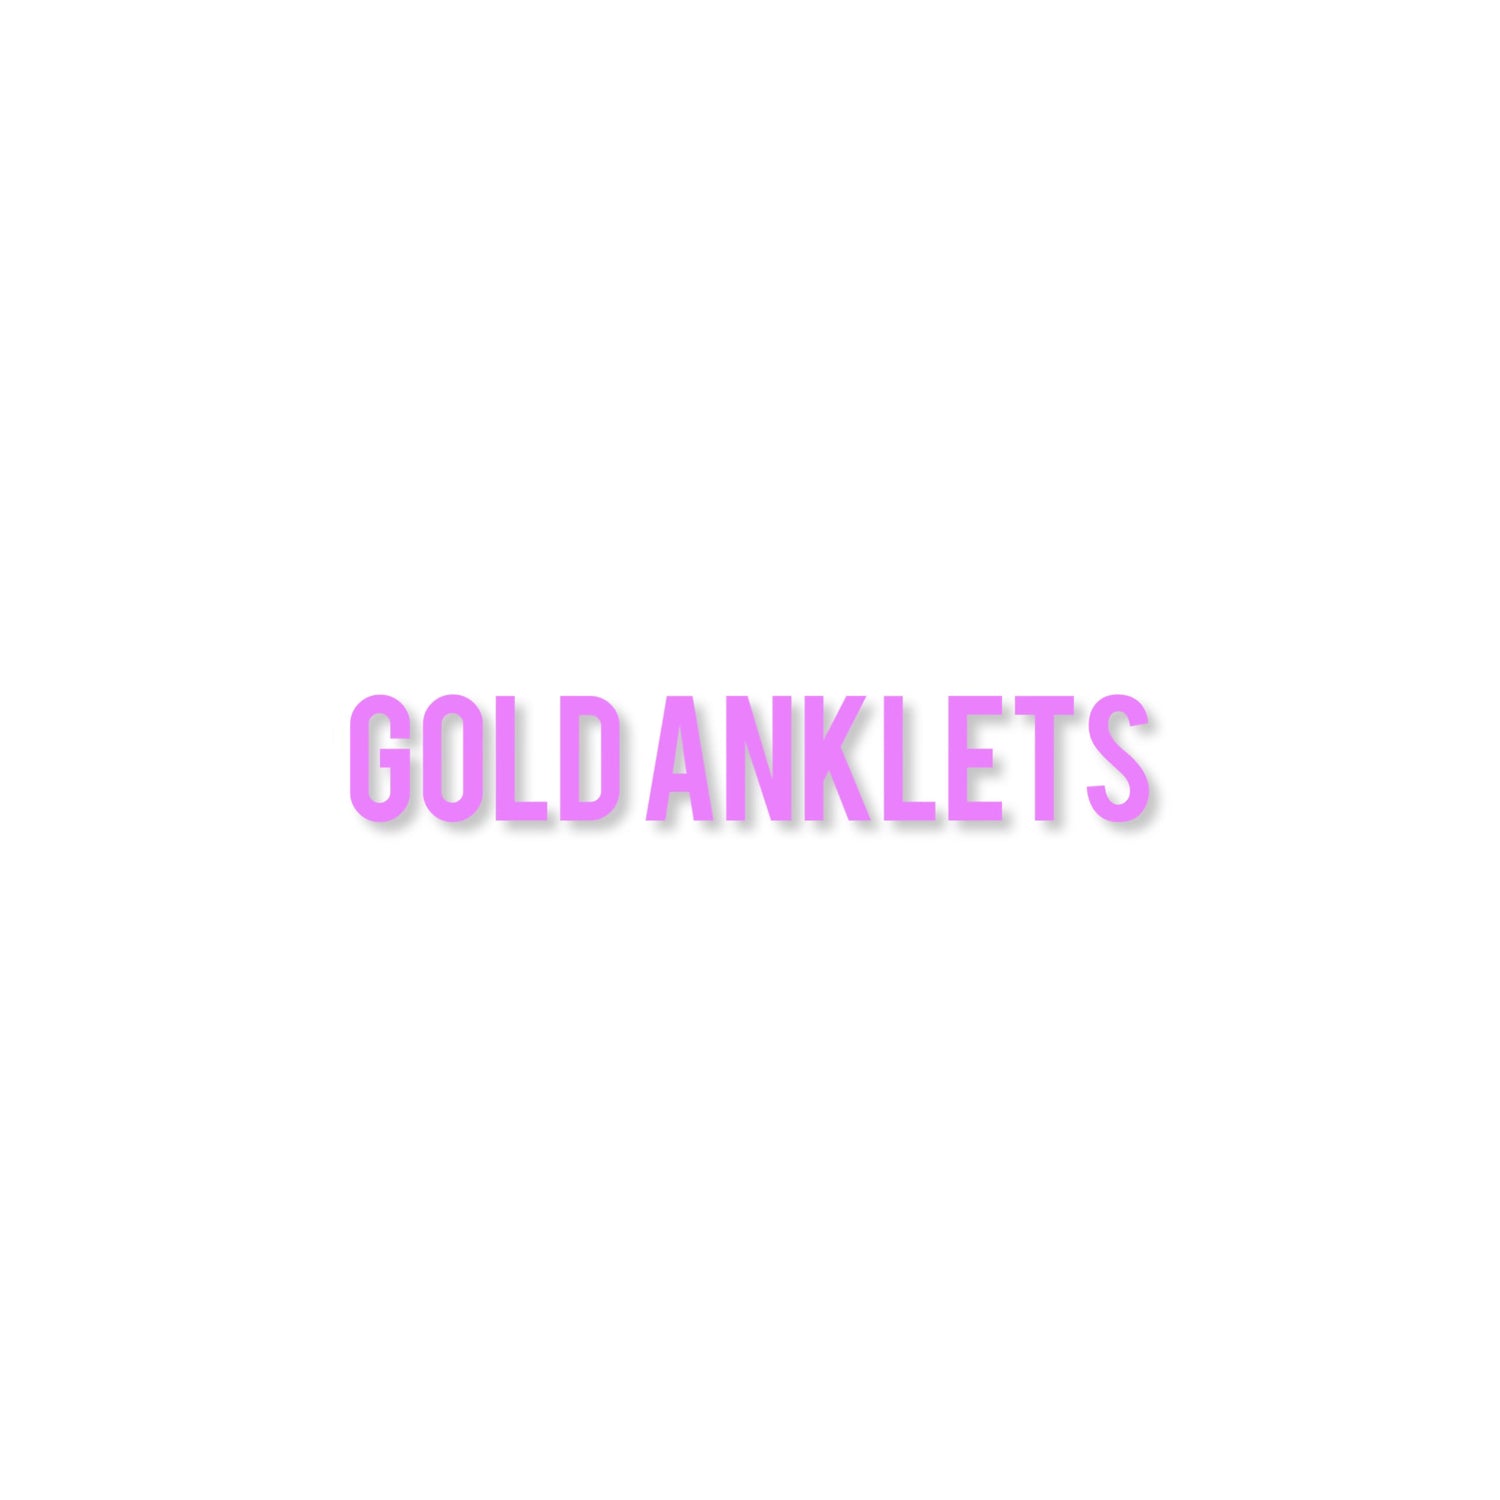 GOLD ANKLETS